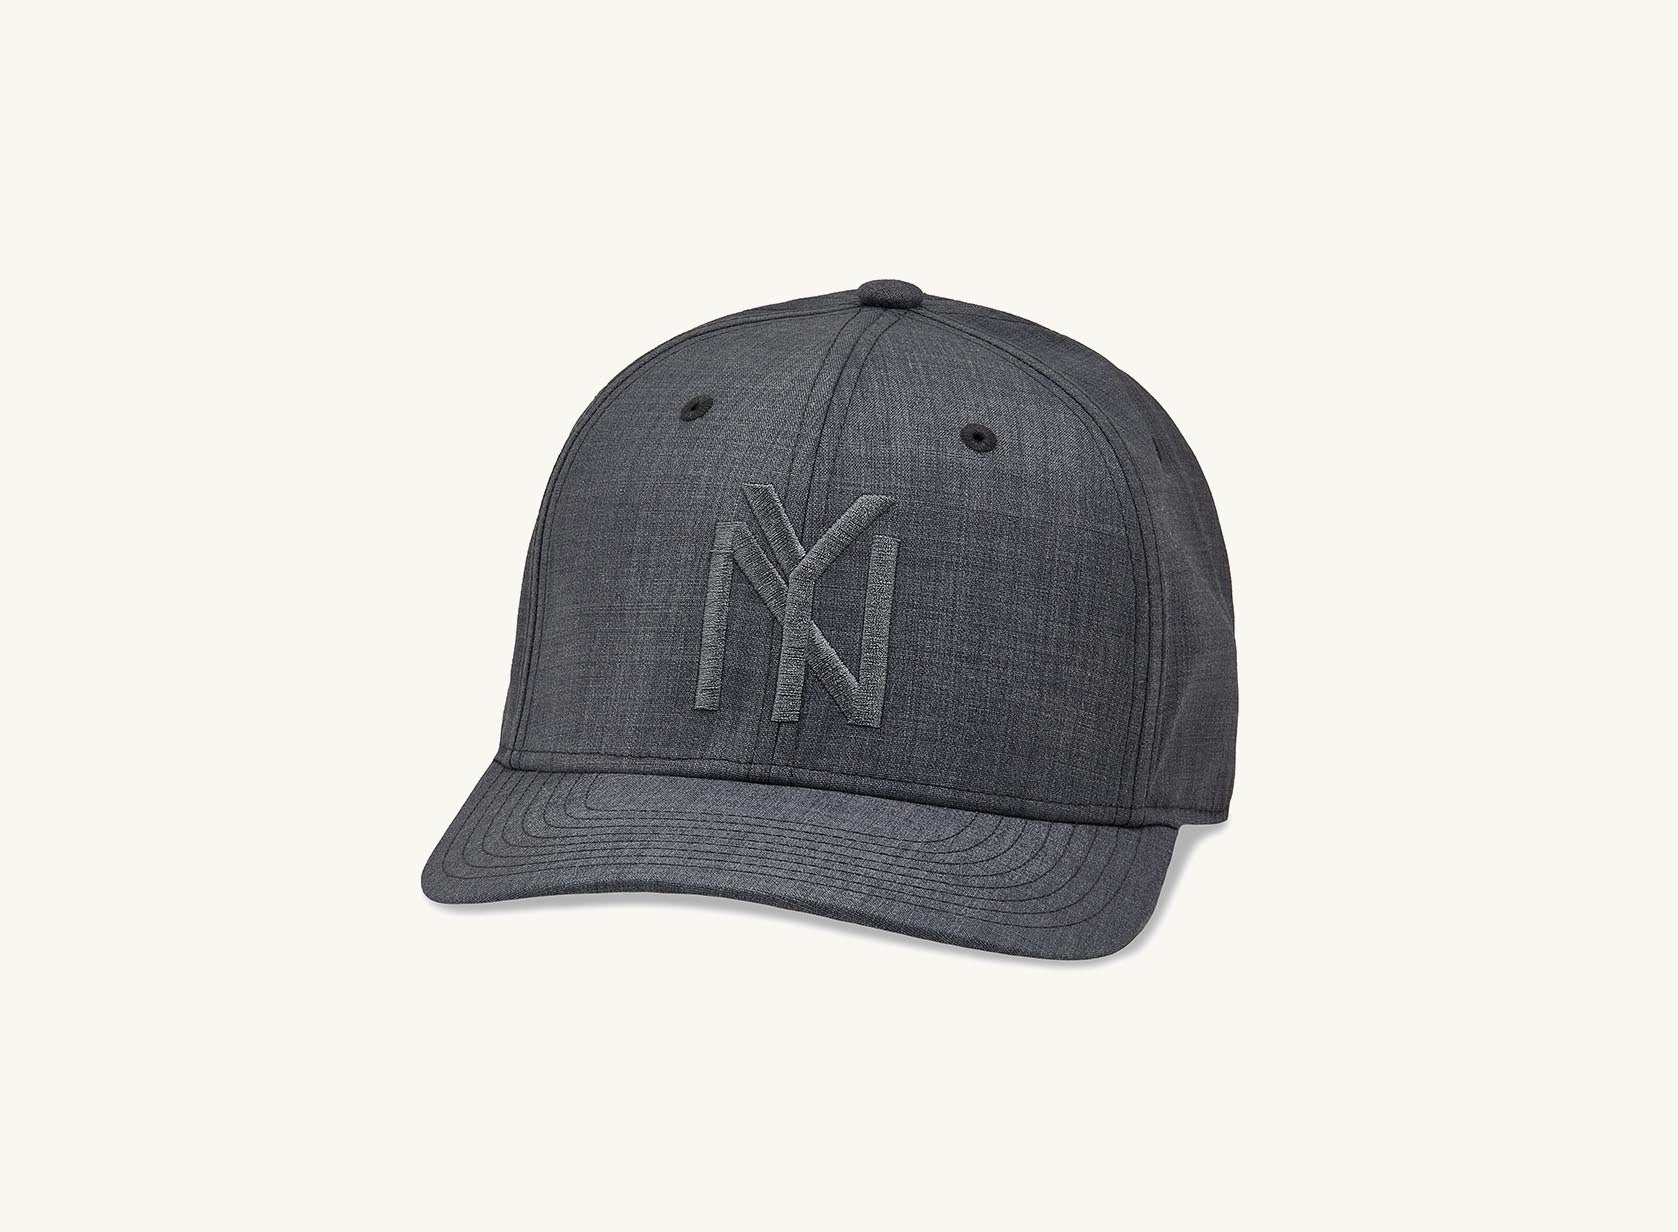 grey NY hat